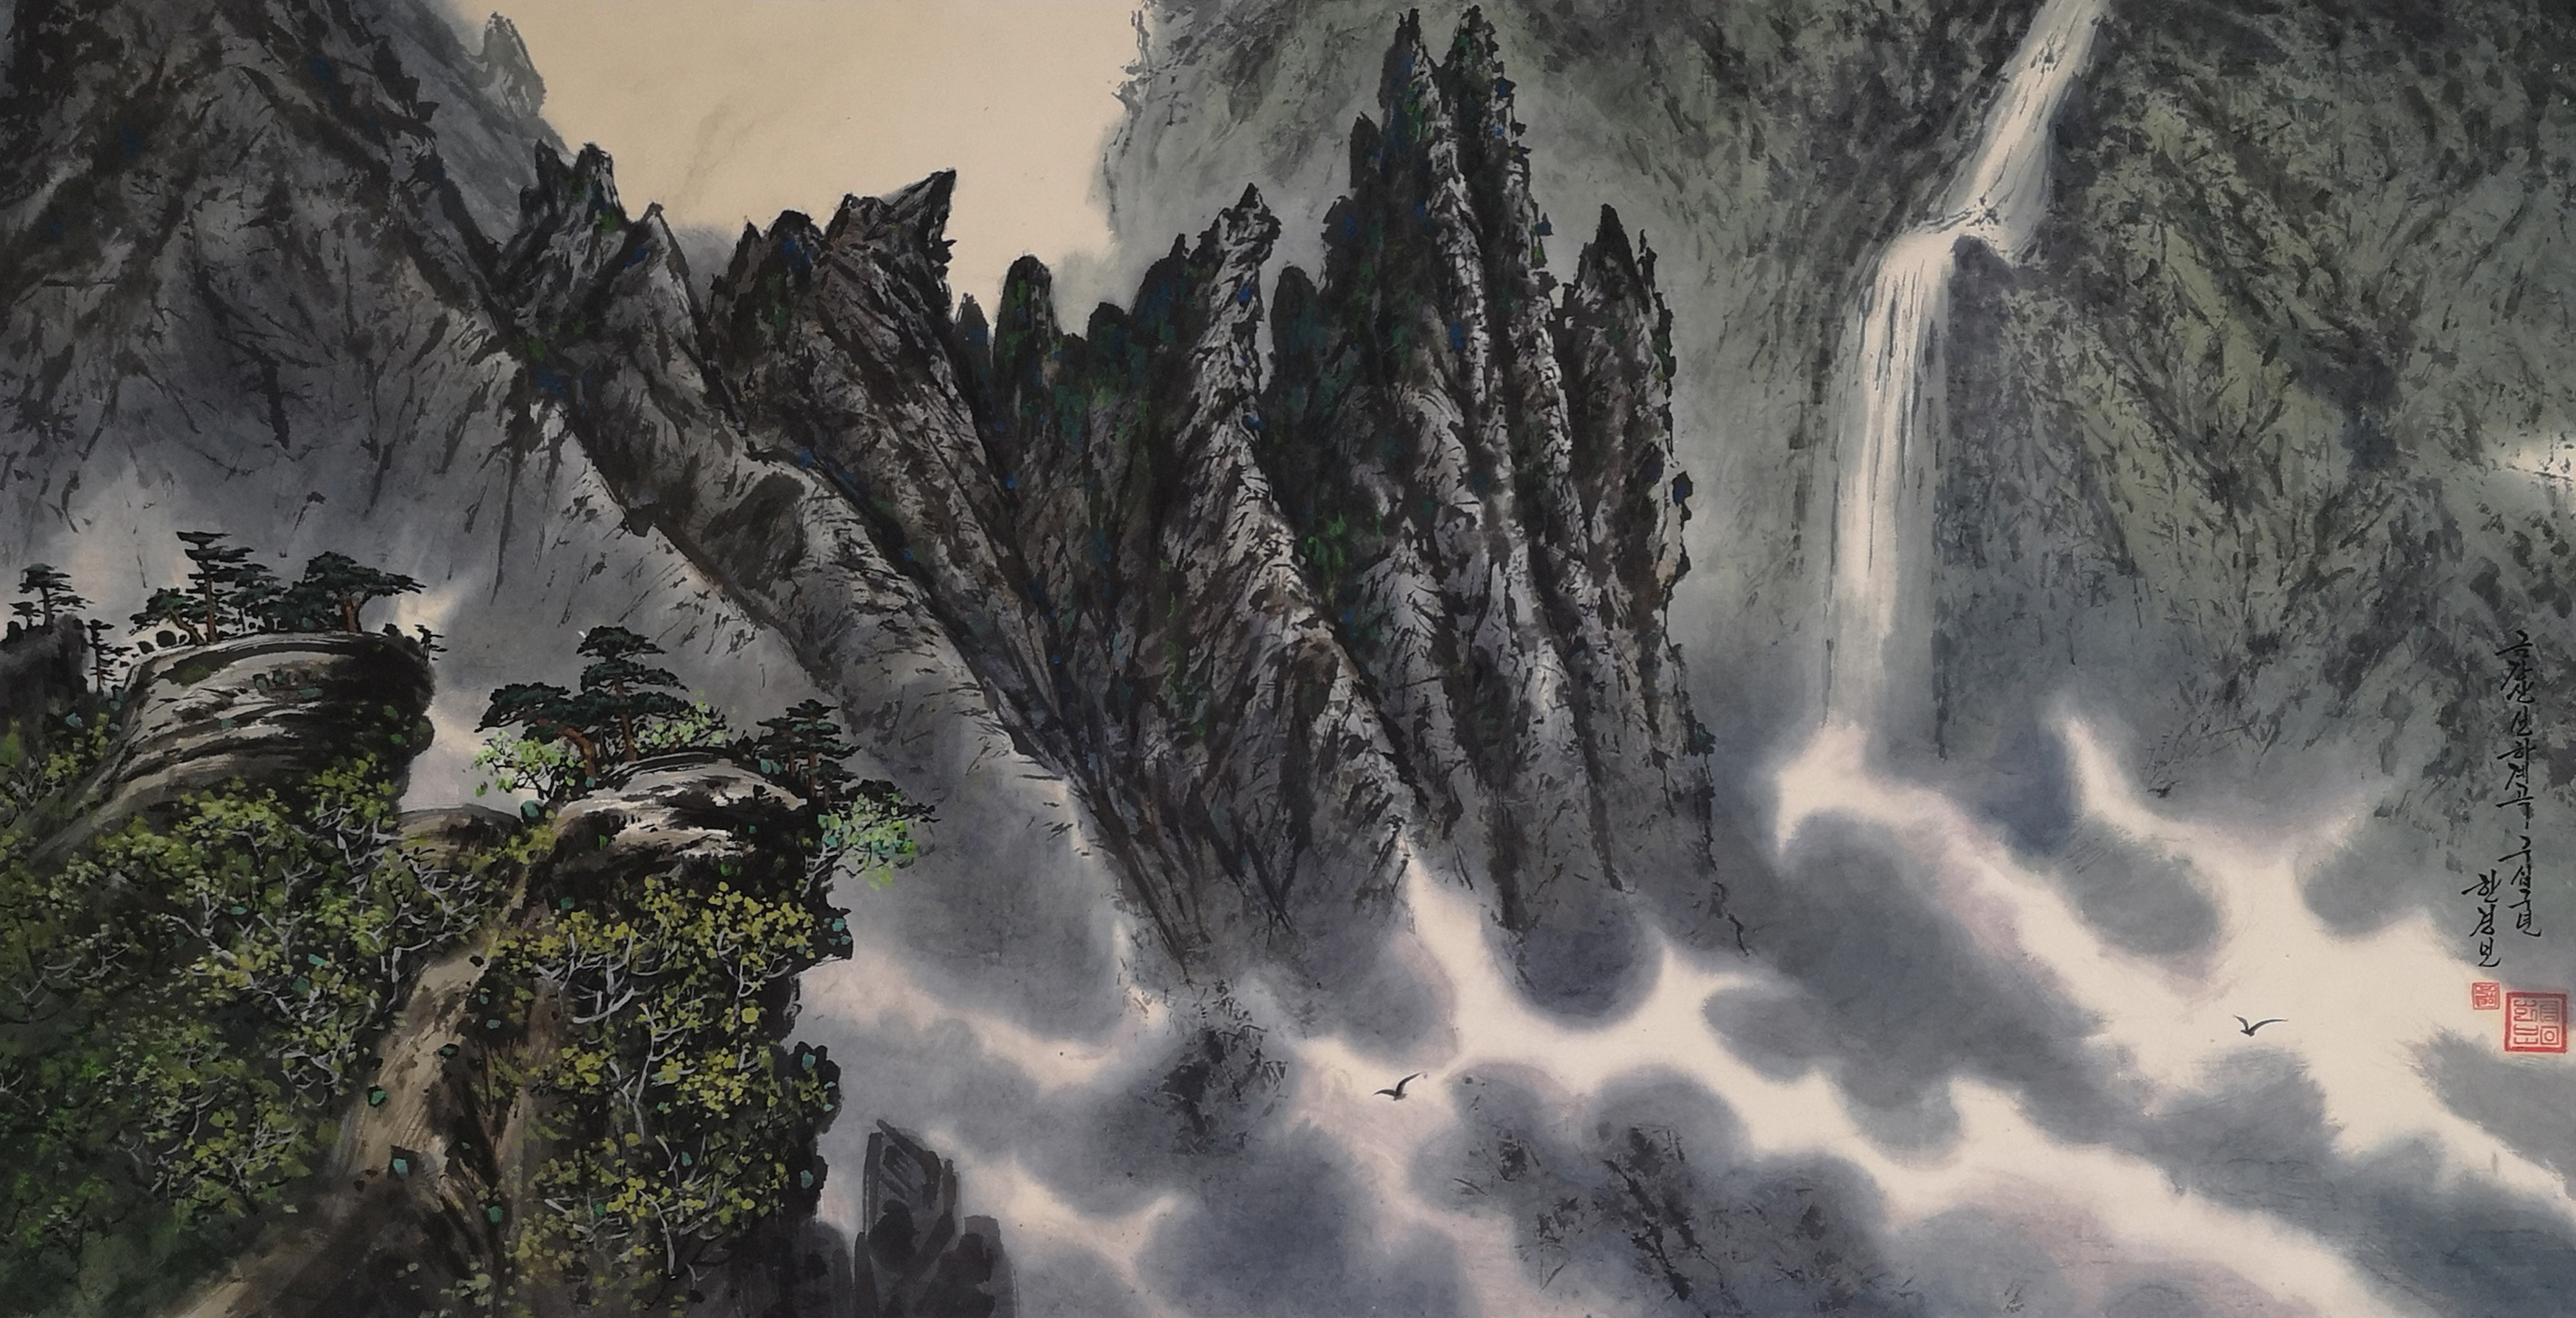 【朝鲜画】韩京宝 金刚山 1999年 131 x 67.5cm